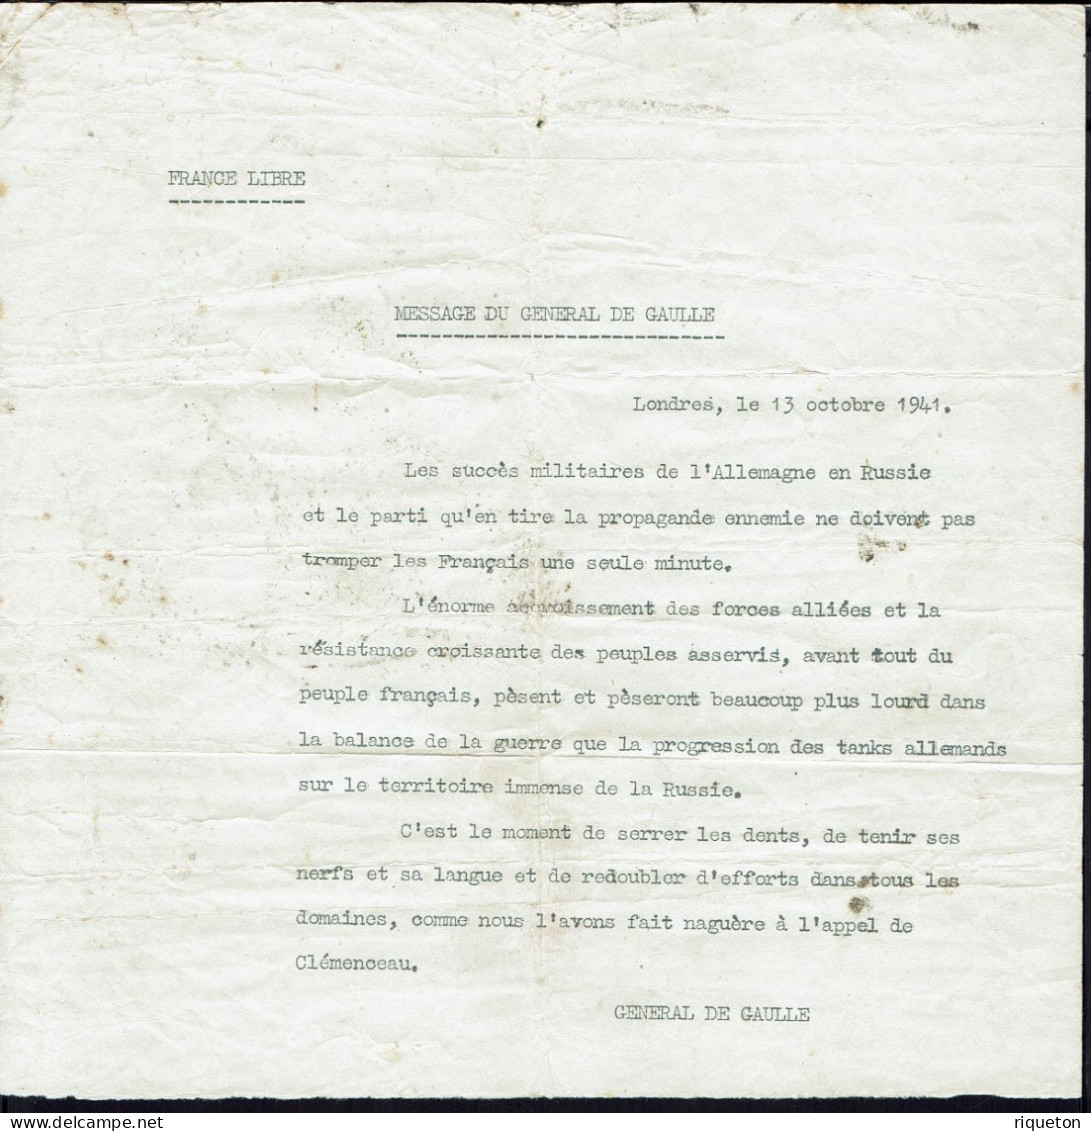 Fr. France Libre. Message Du Général De Gaulle. Londres Le 13 Octobre 1941. - Historical Documents